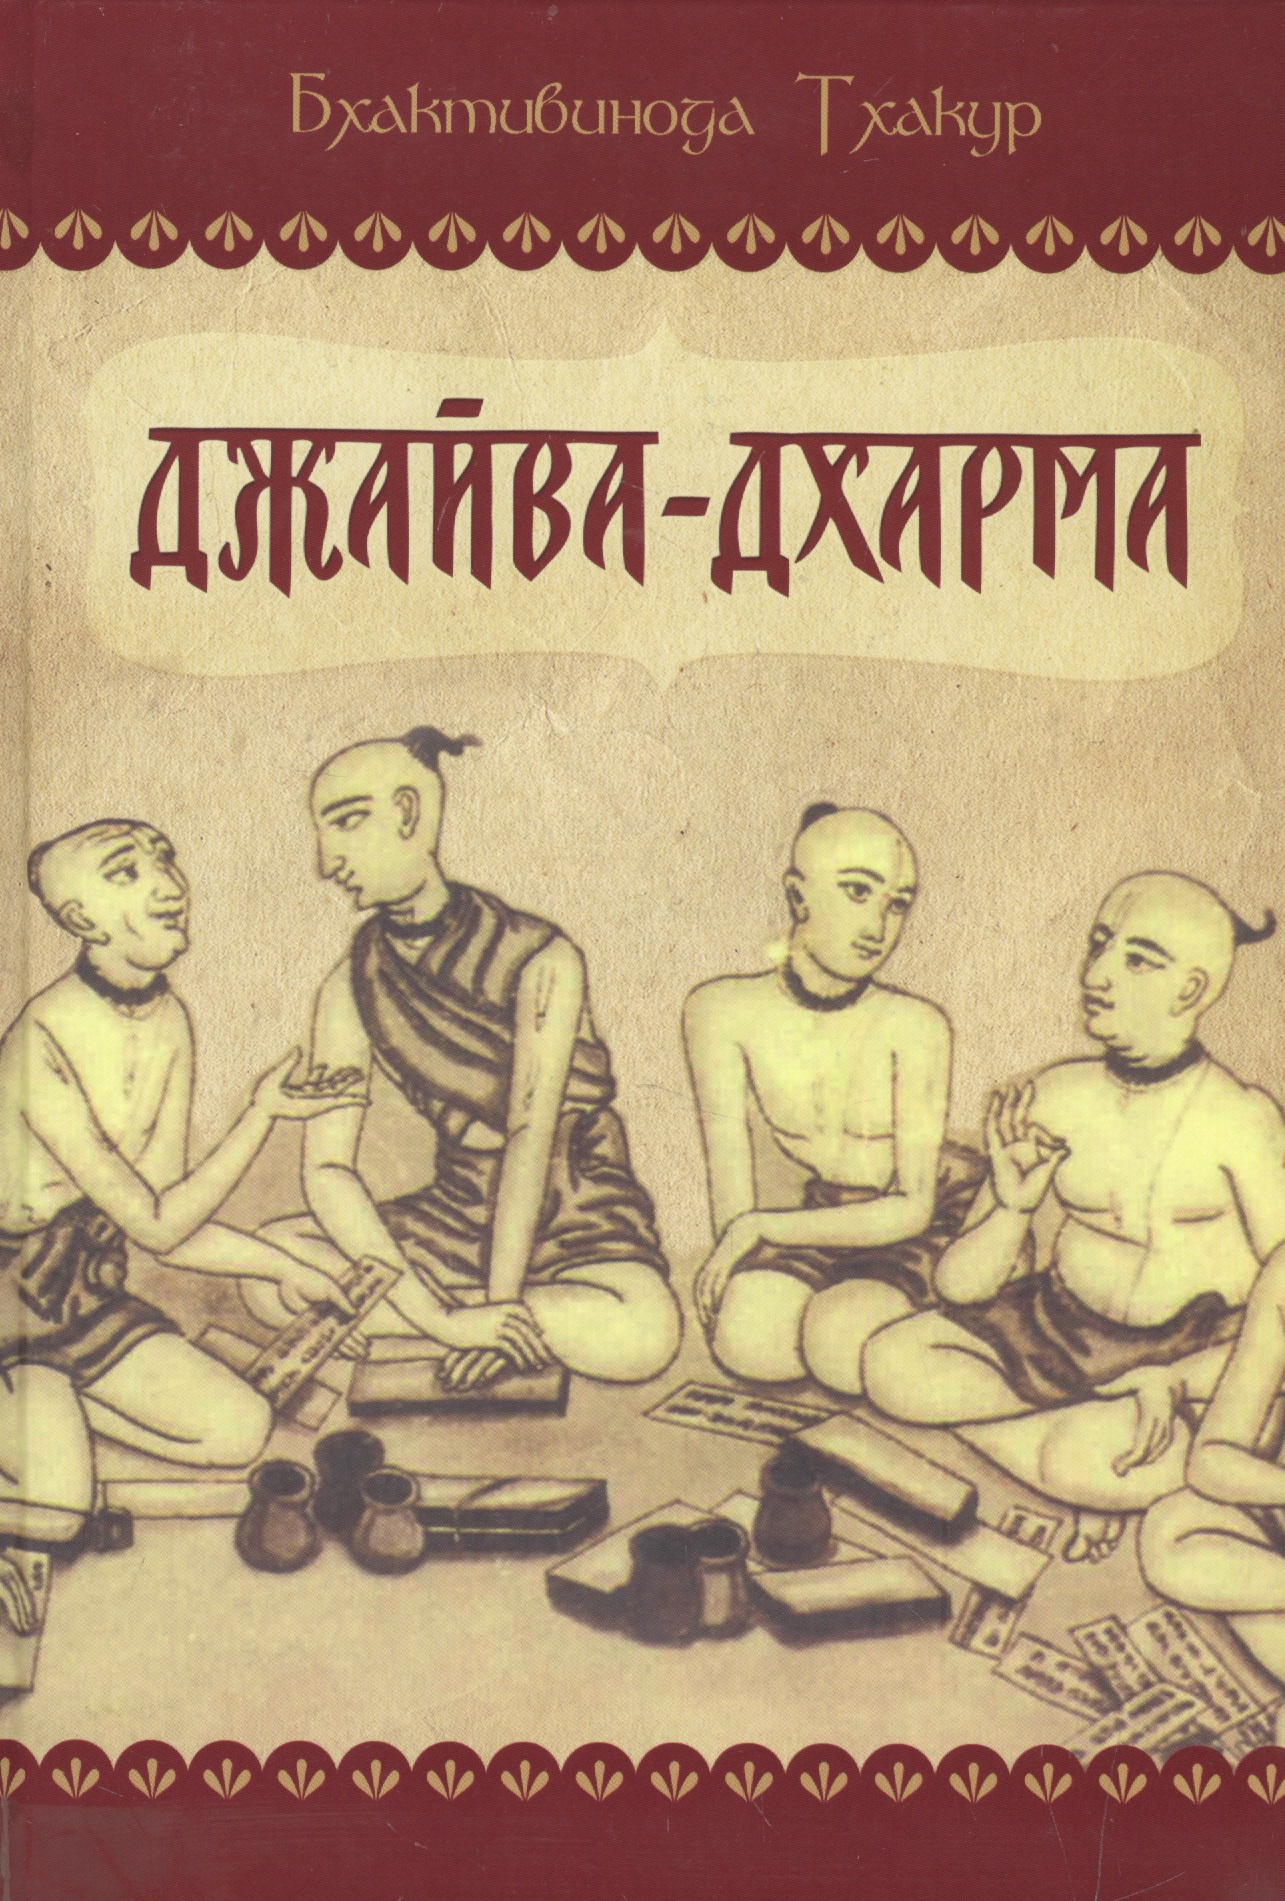 Бхактивинода Тхакур Джайва-дхарма дхарма